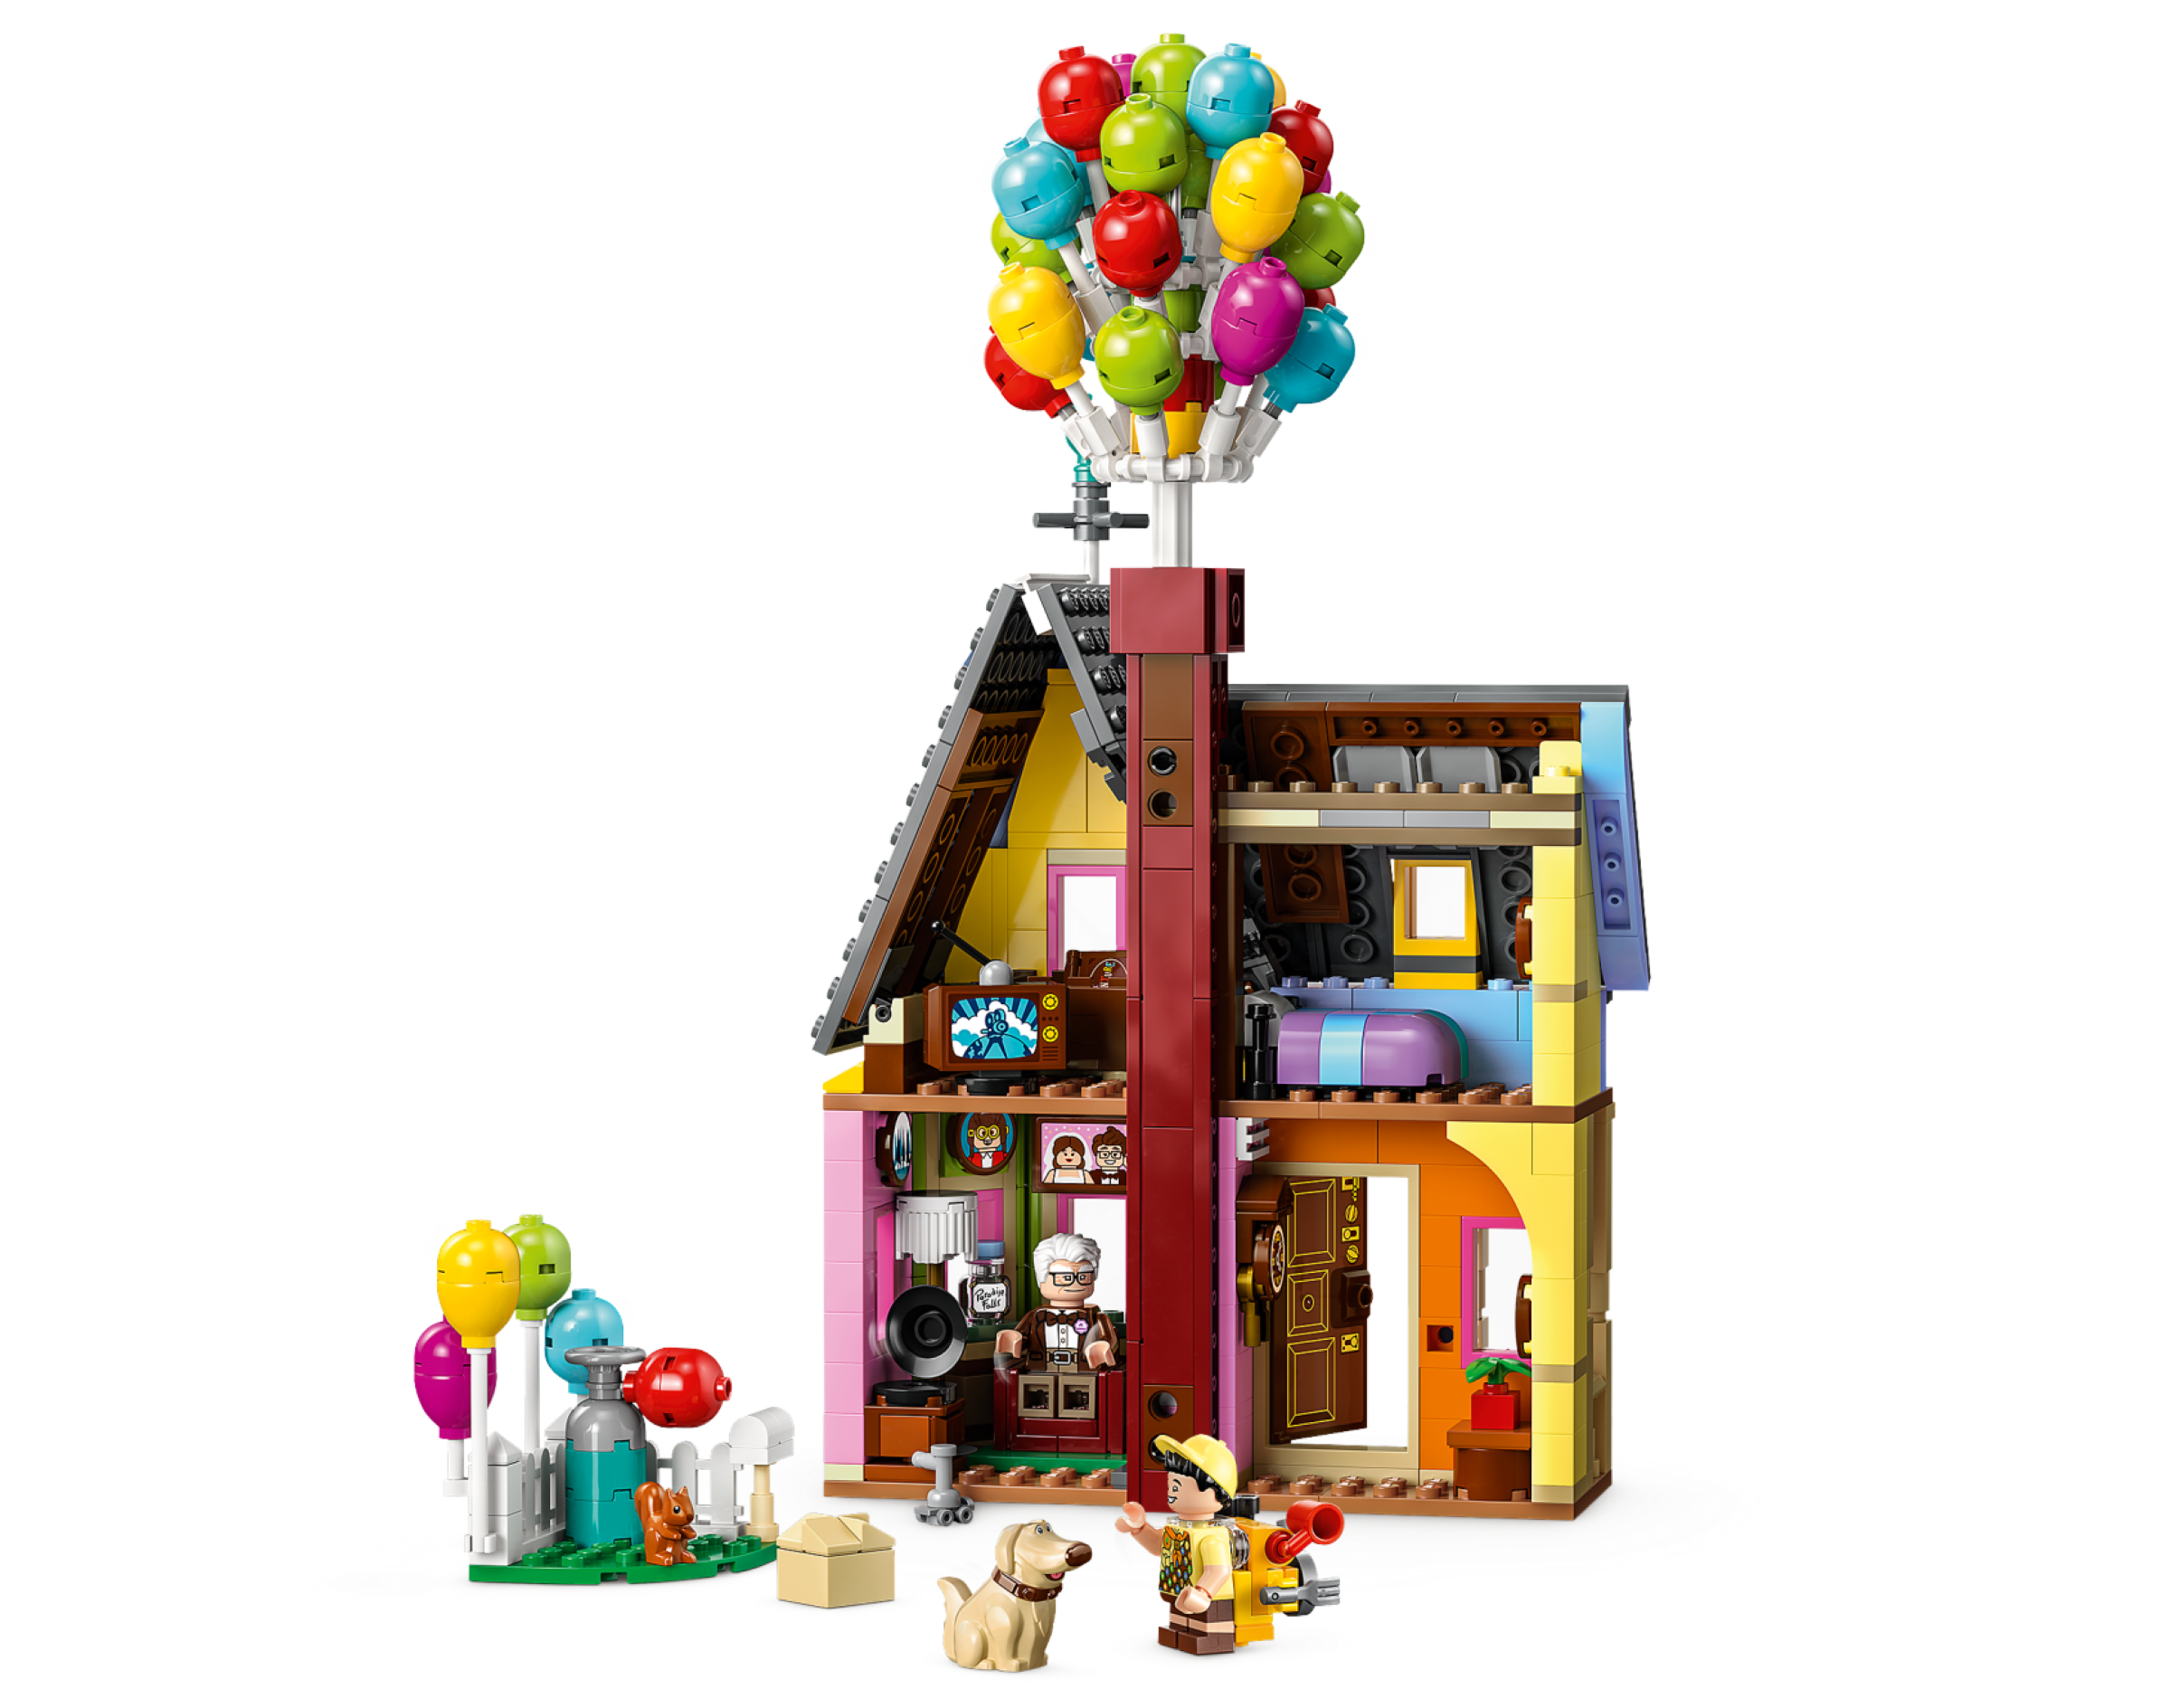 LEGO Disney e Pixar 43217 Casa di Up, Modellino con Palloncini e Figure di  Carl, Russell e Dug Set Disney 100° Anniversario - LEGO - Disney Classic -  Cartoons - Giocattoli